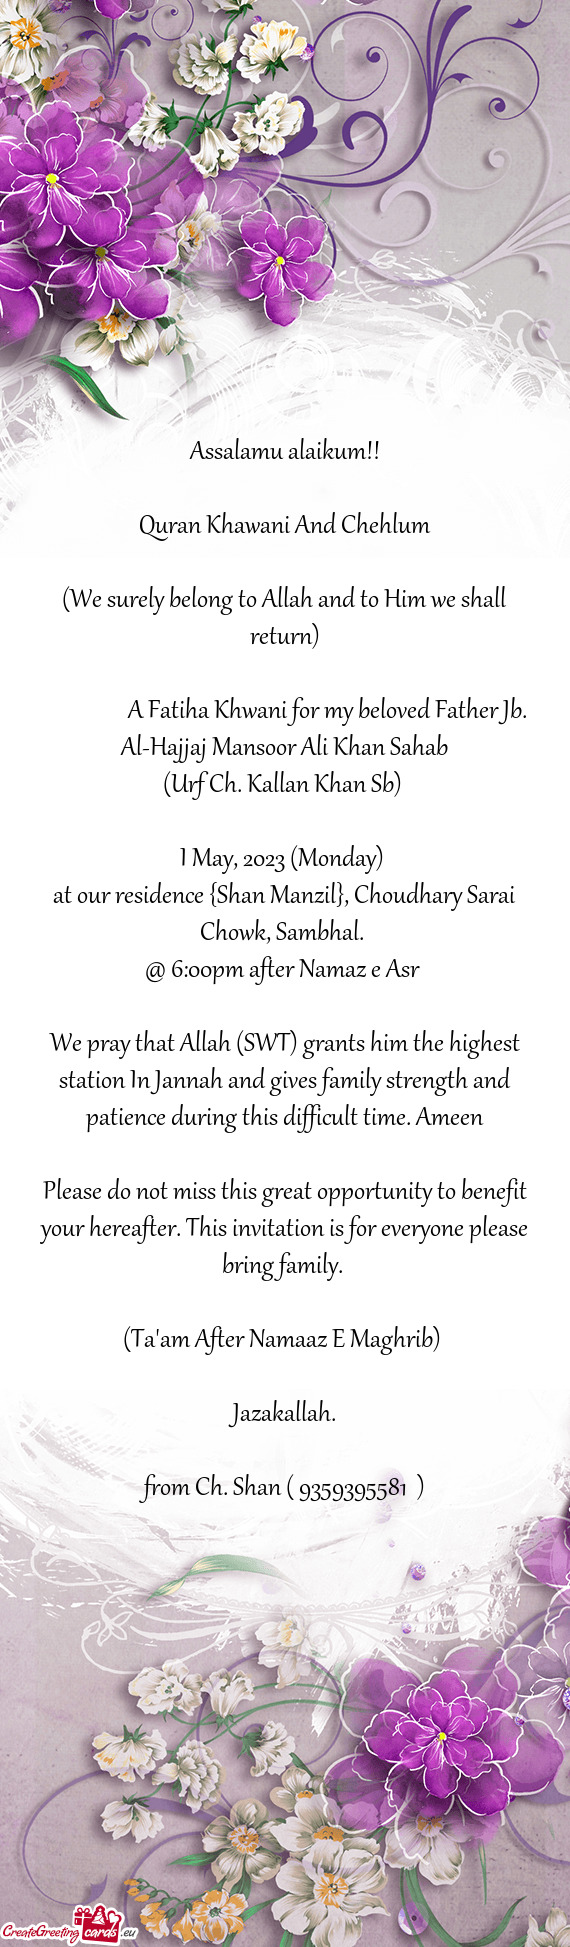 A Fatiha Khwani for my beloved Father Jb. Al-Hajjaj Mansoor Ali Khan Sahab